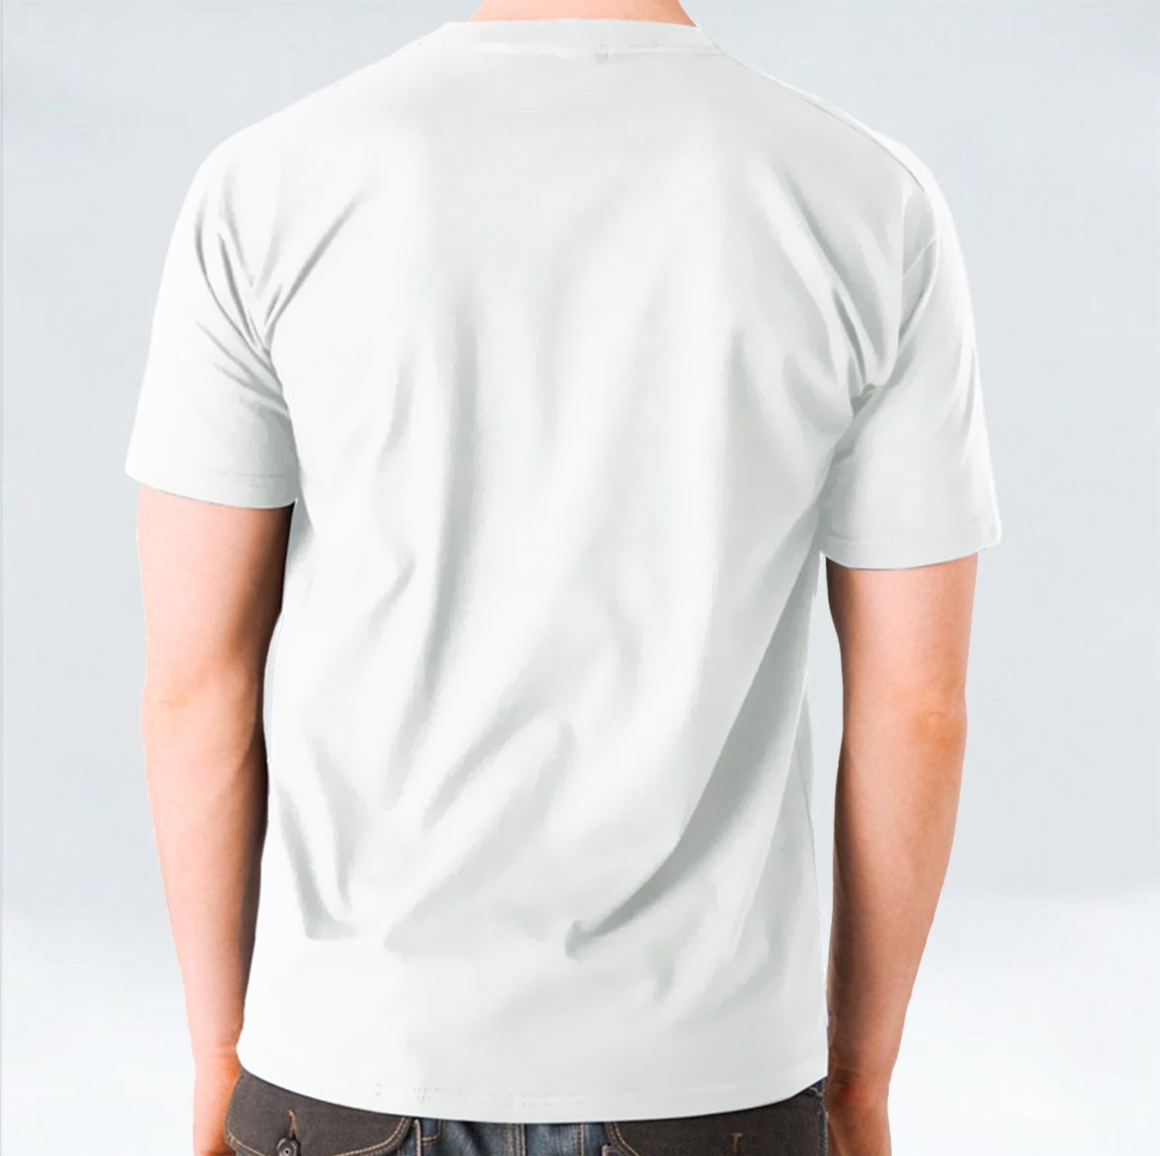 He is Risen Unisex T-shirt - White/Black/Maroon